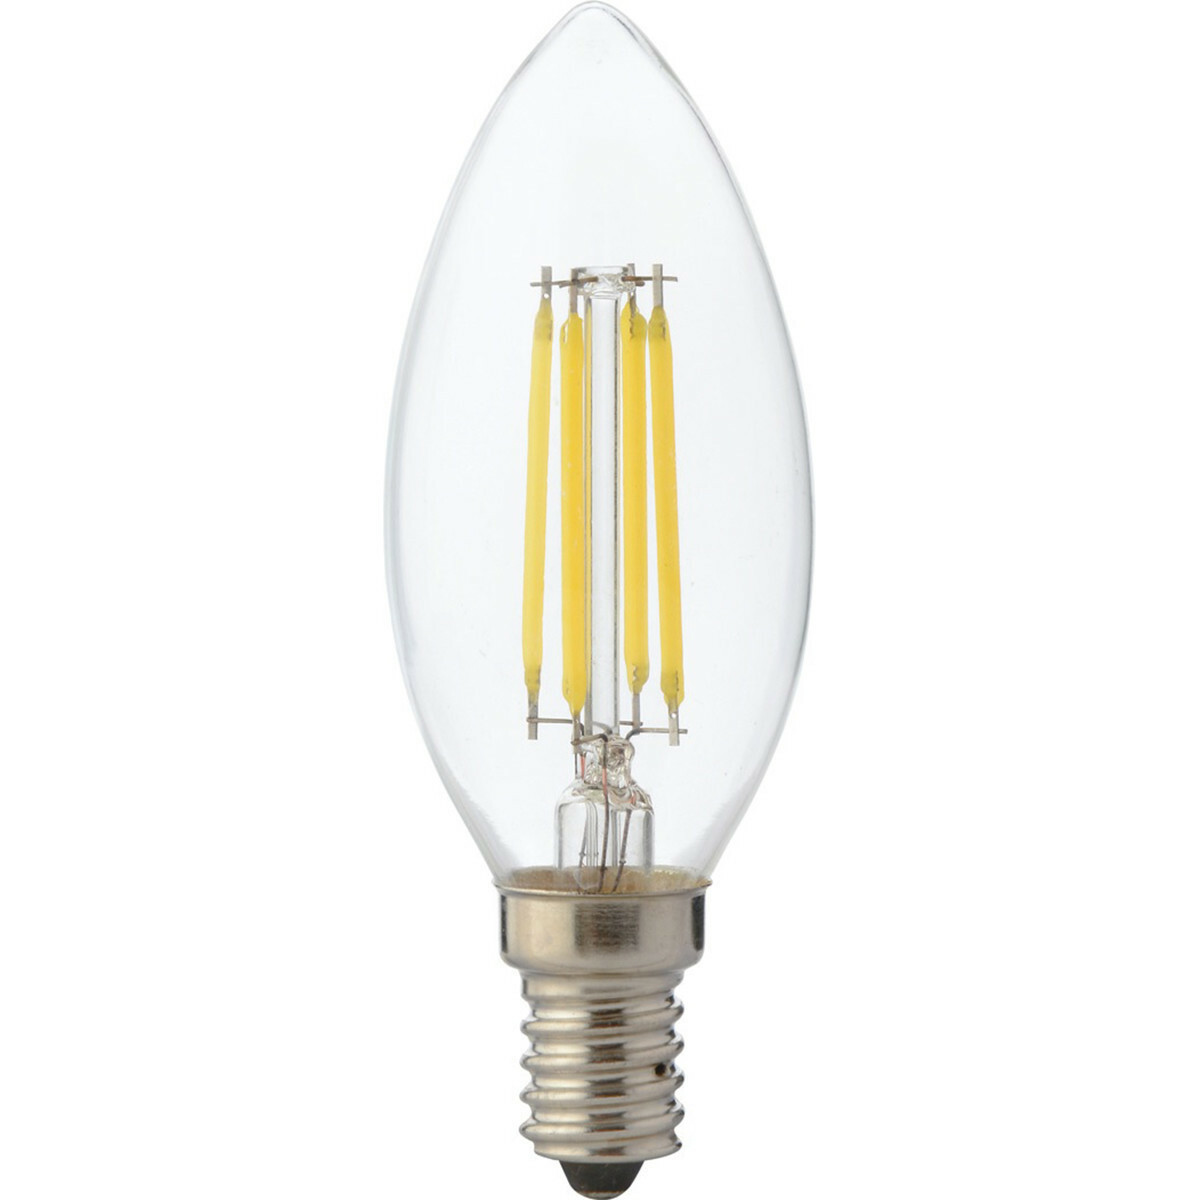 Lang landbouw krom LED Lamp - Kaarslamp - Filament - E14 Fitting - 6W Dimbaar - Warm Wit 2700K  | BES LED